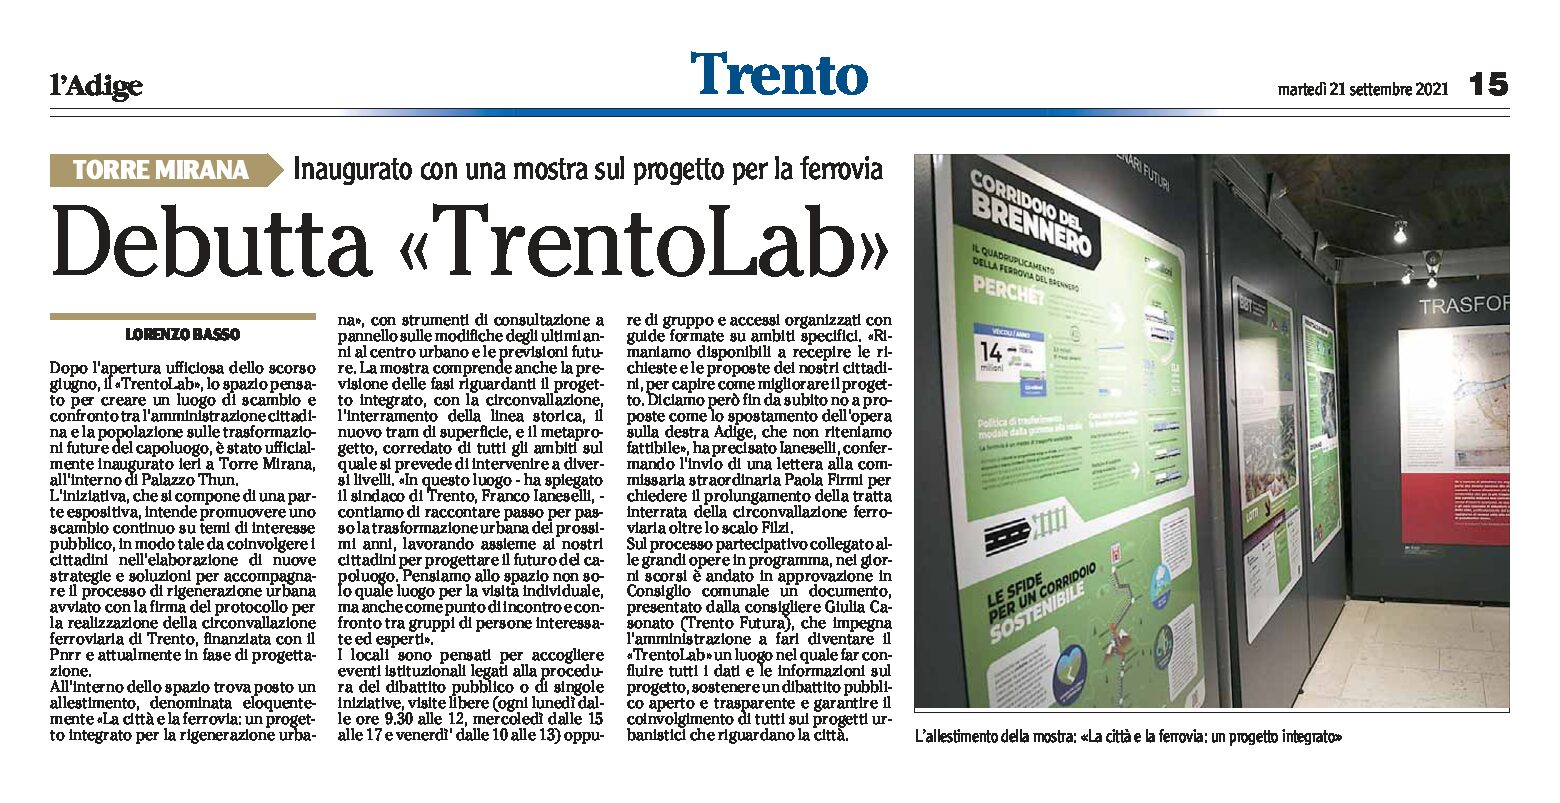 Trento, Torre Mirana: debutta TrentoLab, con una mostra sul progetto per la ferrovia